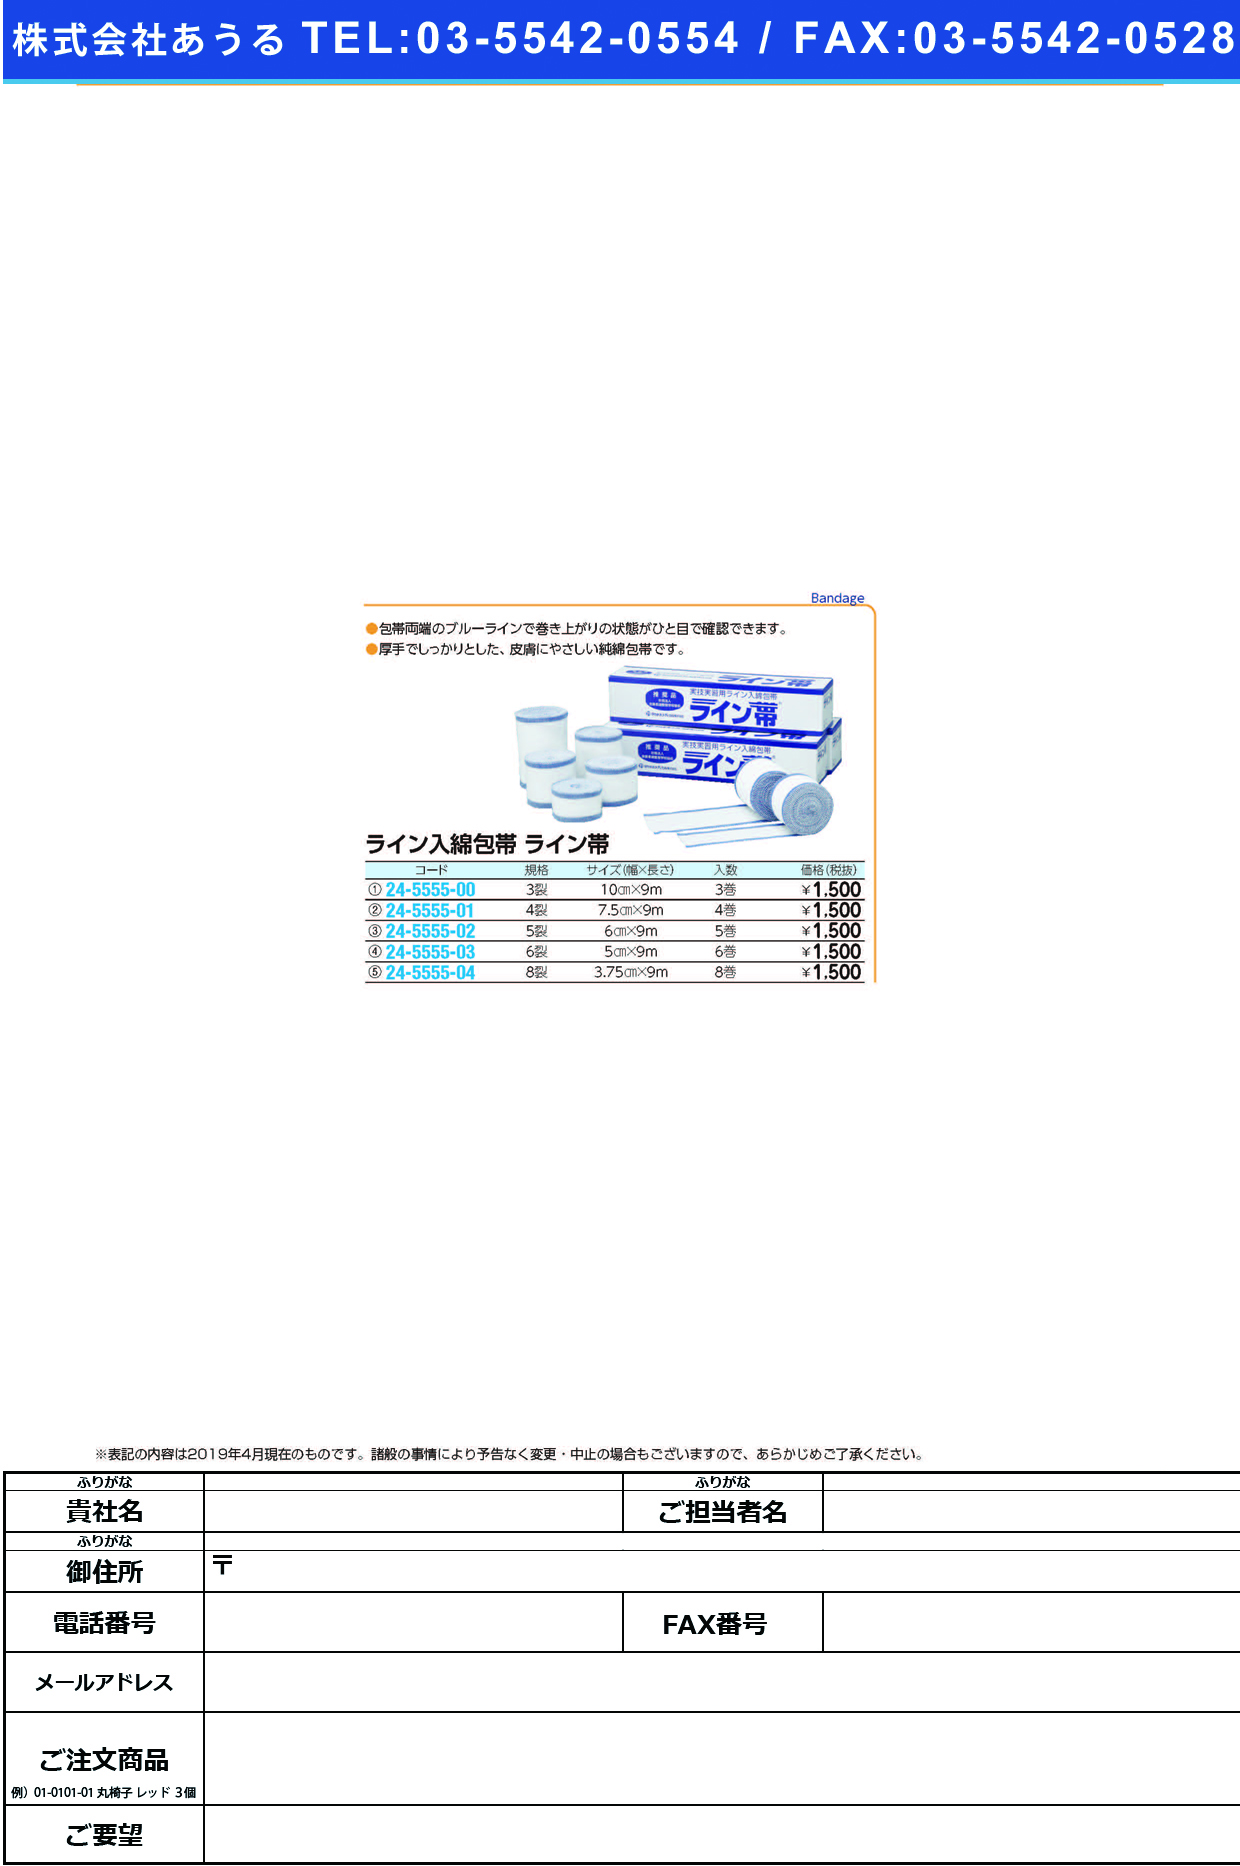 (24-5555-02)ライン帯ＳＰ５裂 TB-5R(6.0CMX9M)5ｶﾝ ﾗｲﾝﾀｲSP【1箱単位】【2019年カタログ商品】